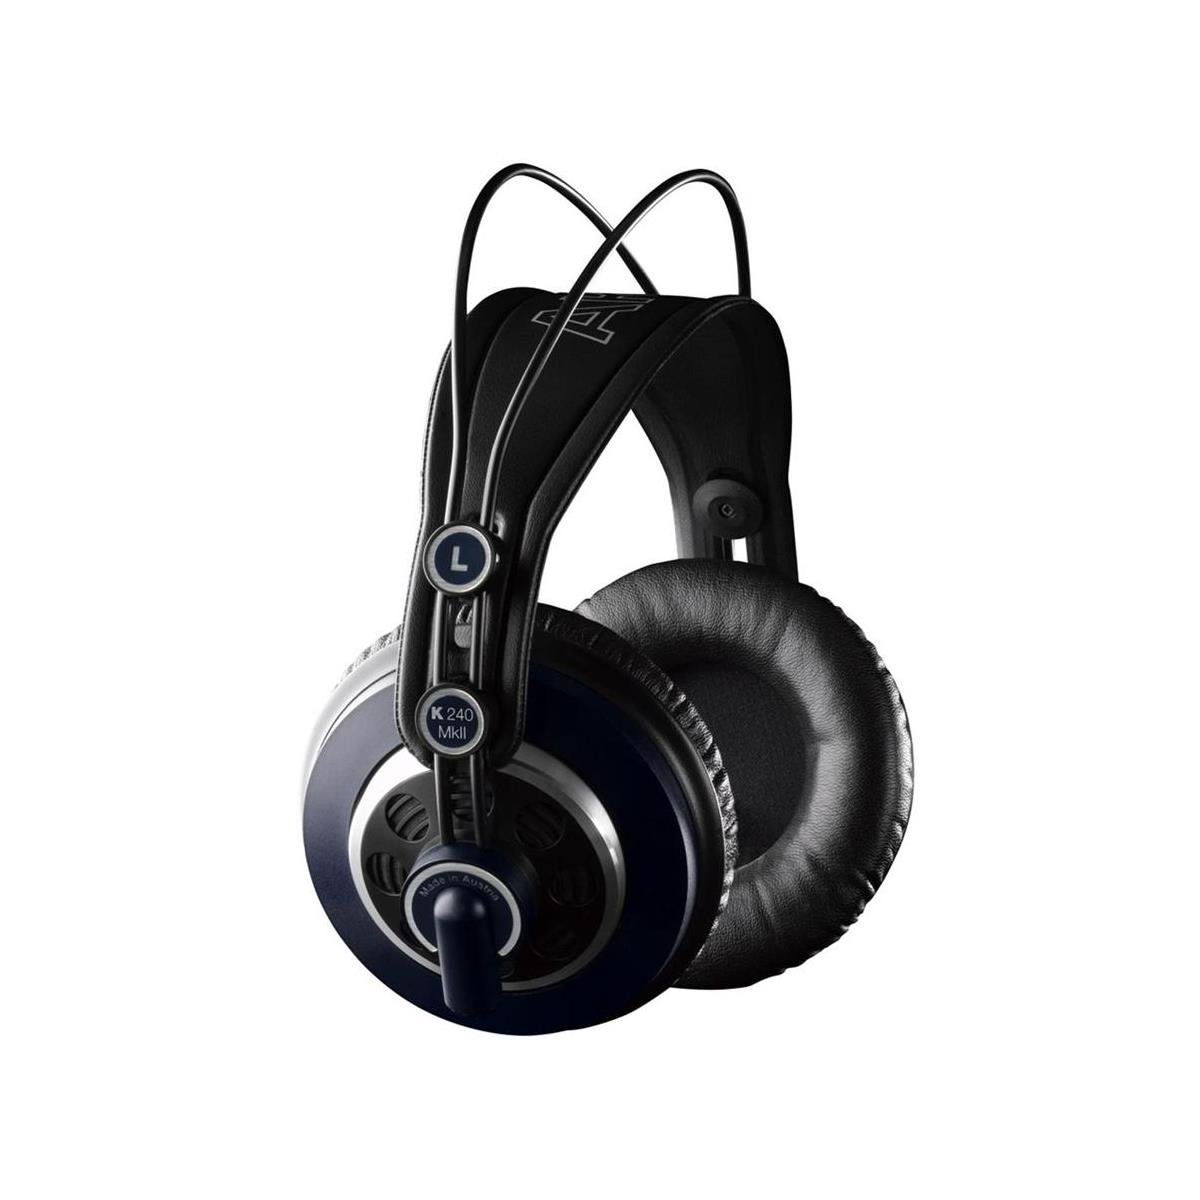 Image of AKG AKG K 240 MKII Studio Headphones with Speaker